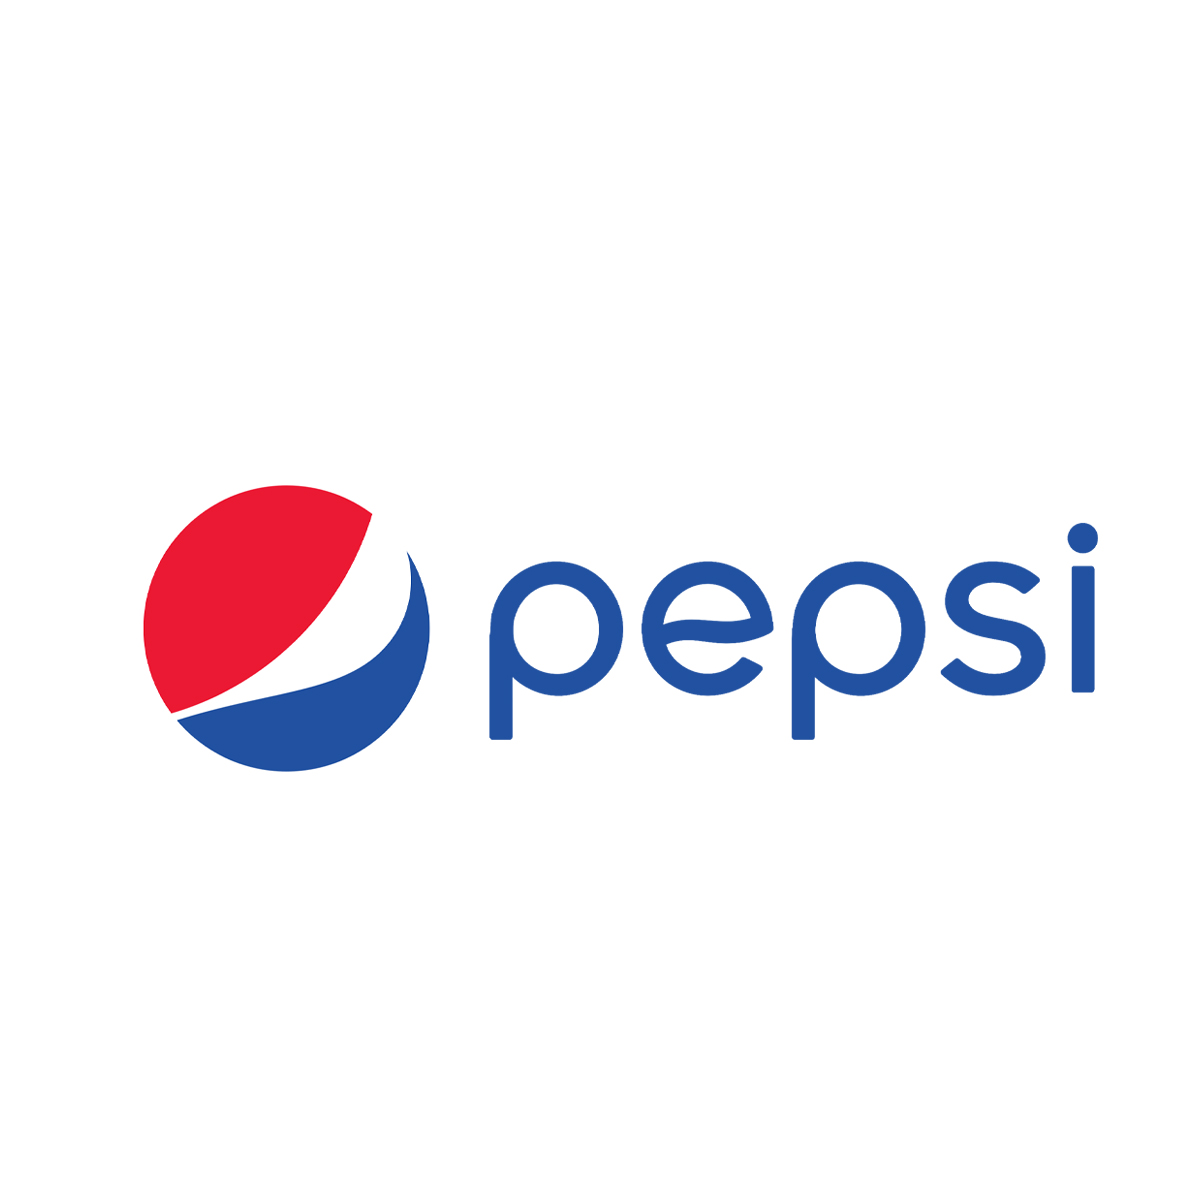 Pepsi stend